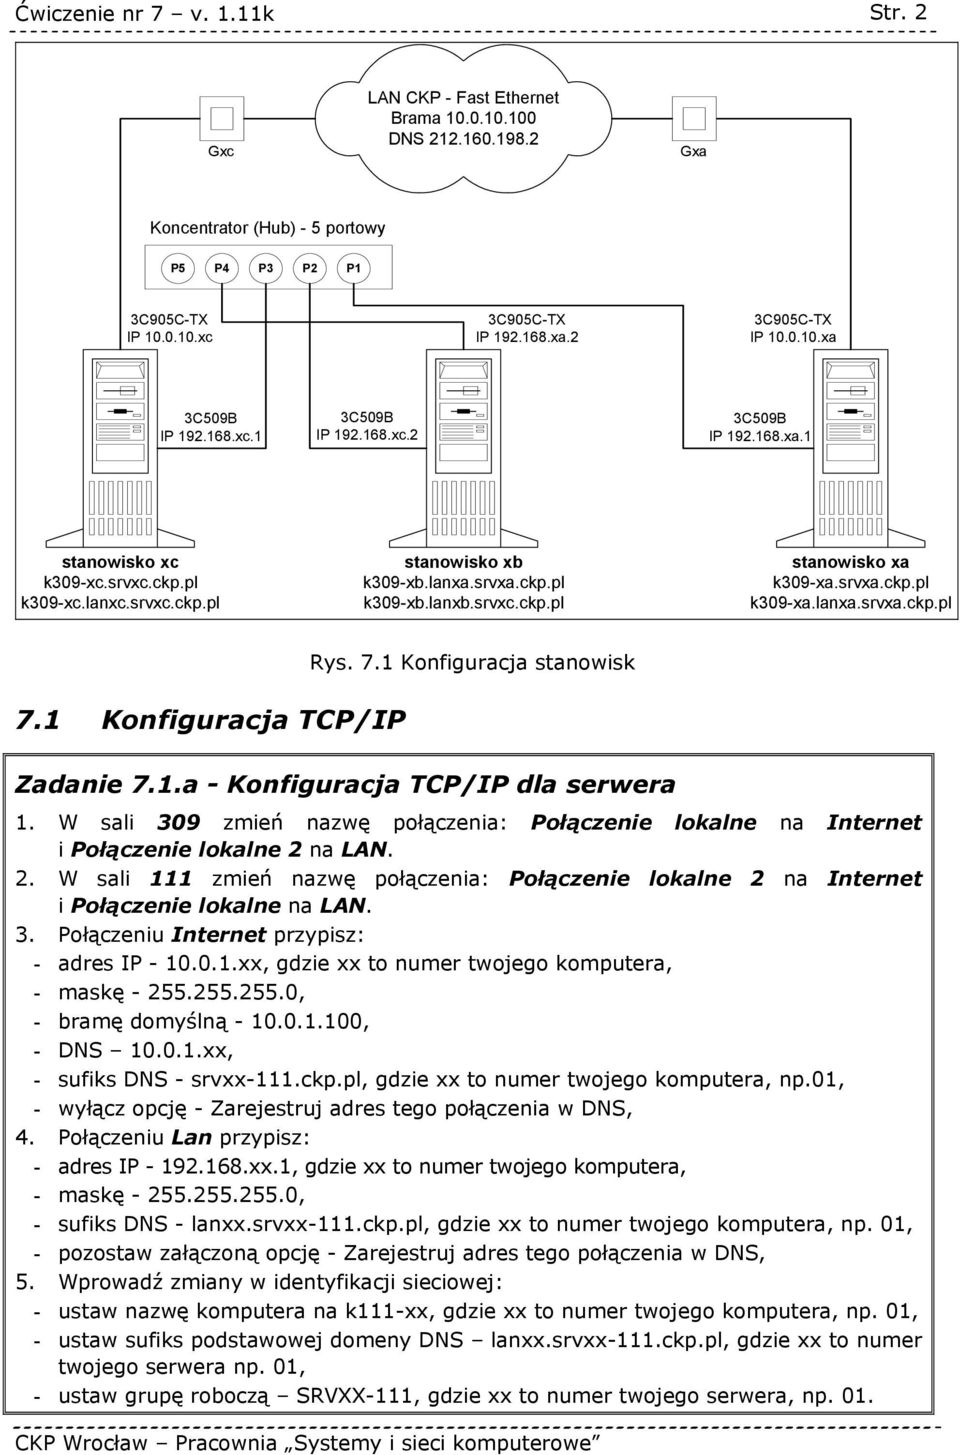 srvxa.ckp.pl k309-xa.lanxa.srvxa.ckp.pl Rys. 7.1 Konfiguracja stanowisk 7.1 Konfiguracja TCP/IP Zadanie 7.1.a - Konfiguracja TCP/IP dla serwera 1.